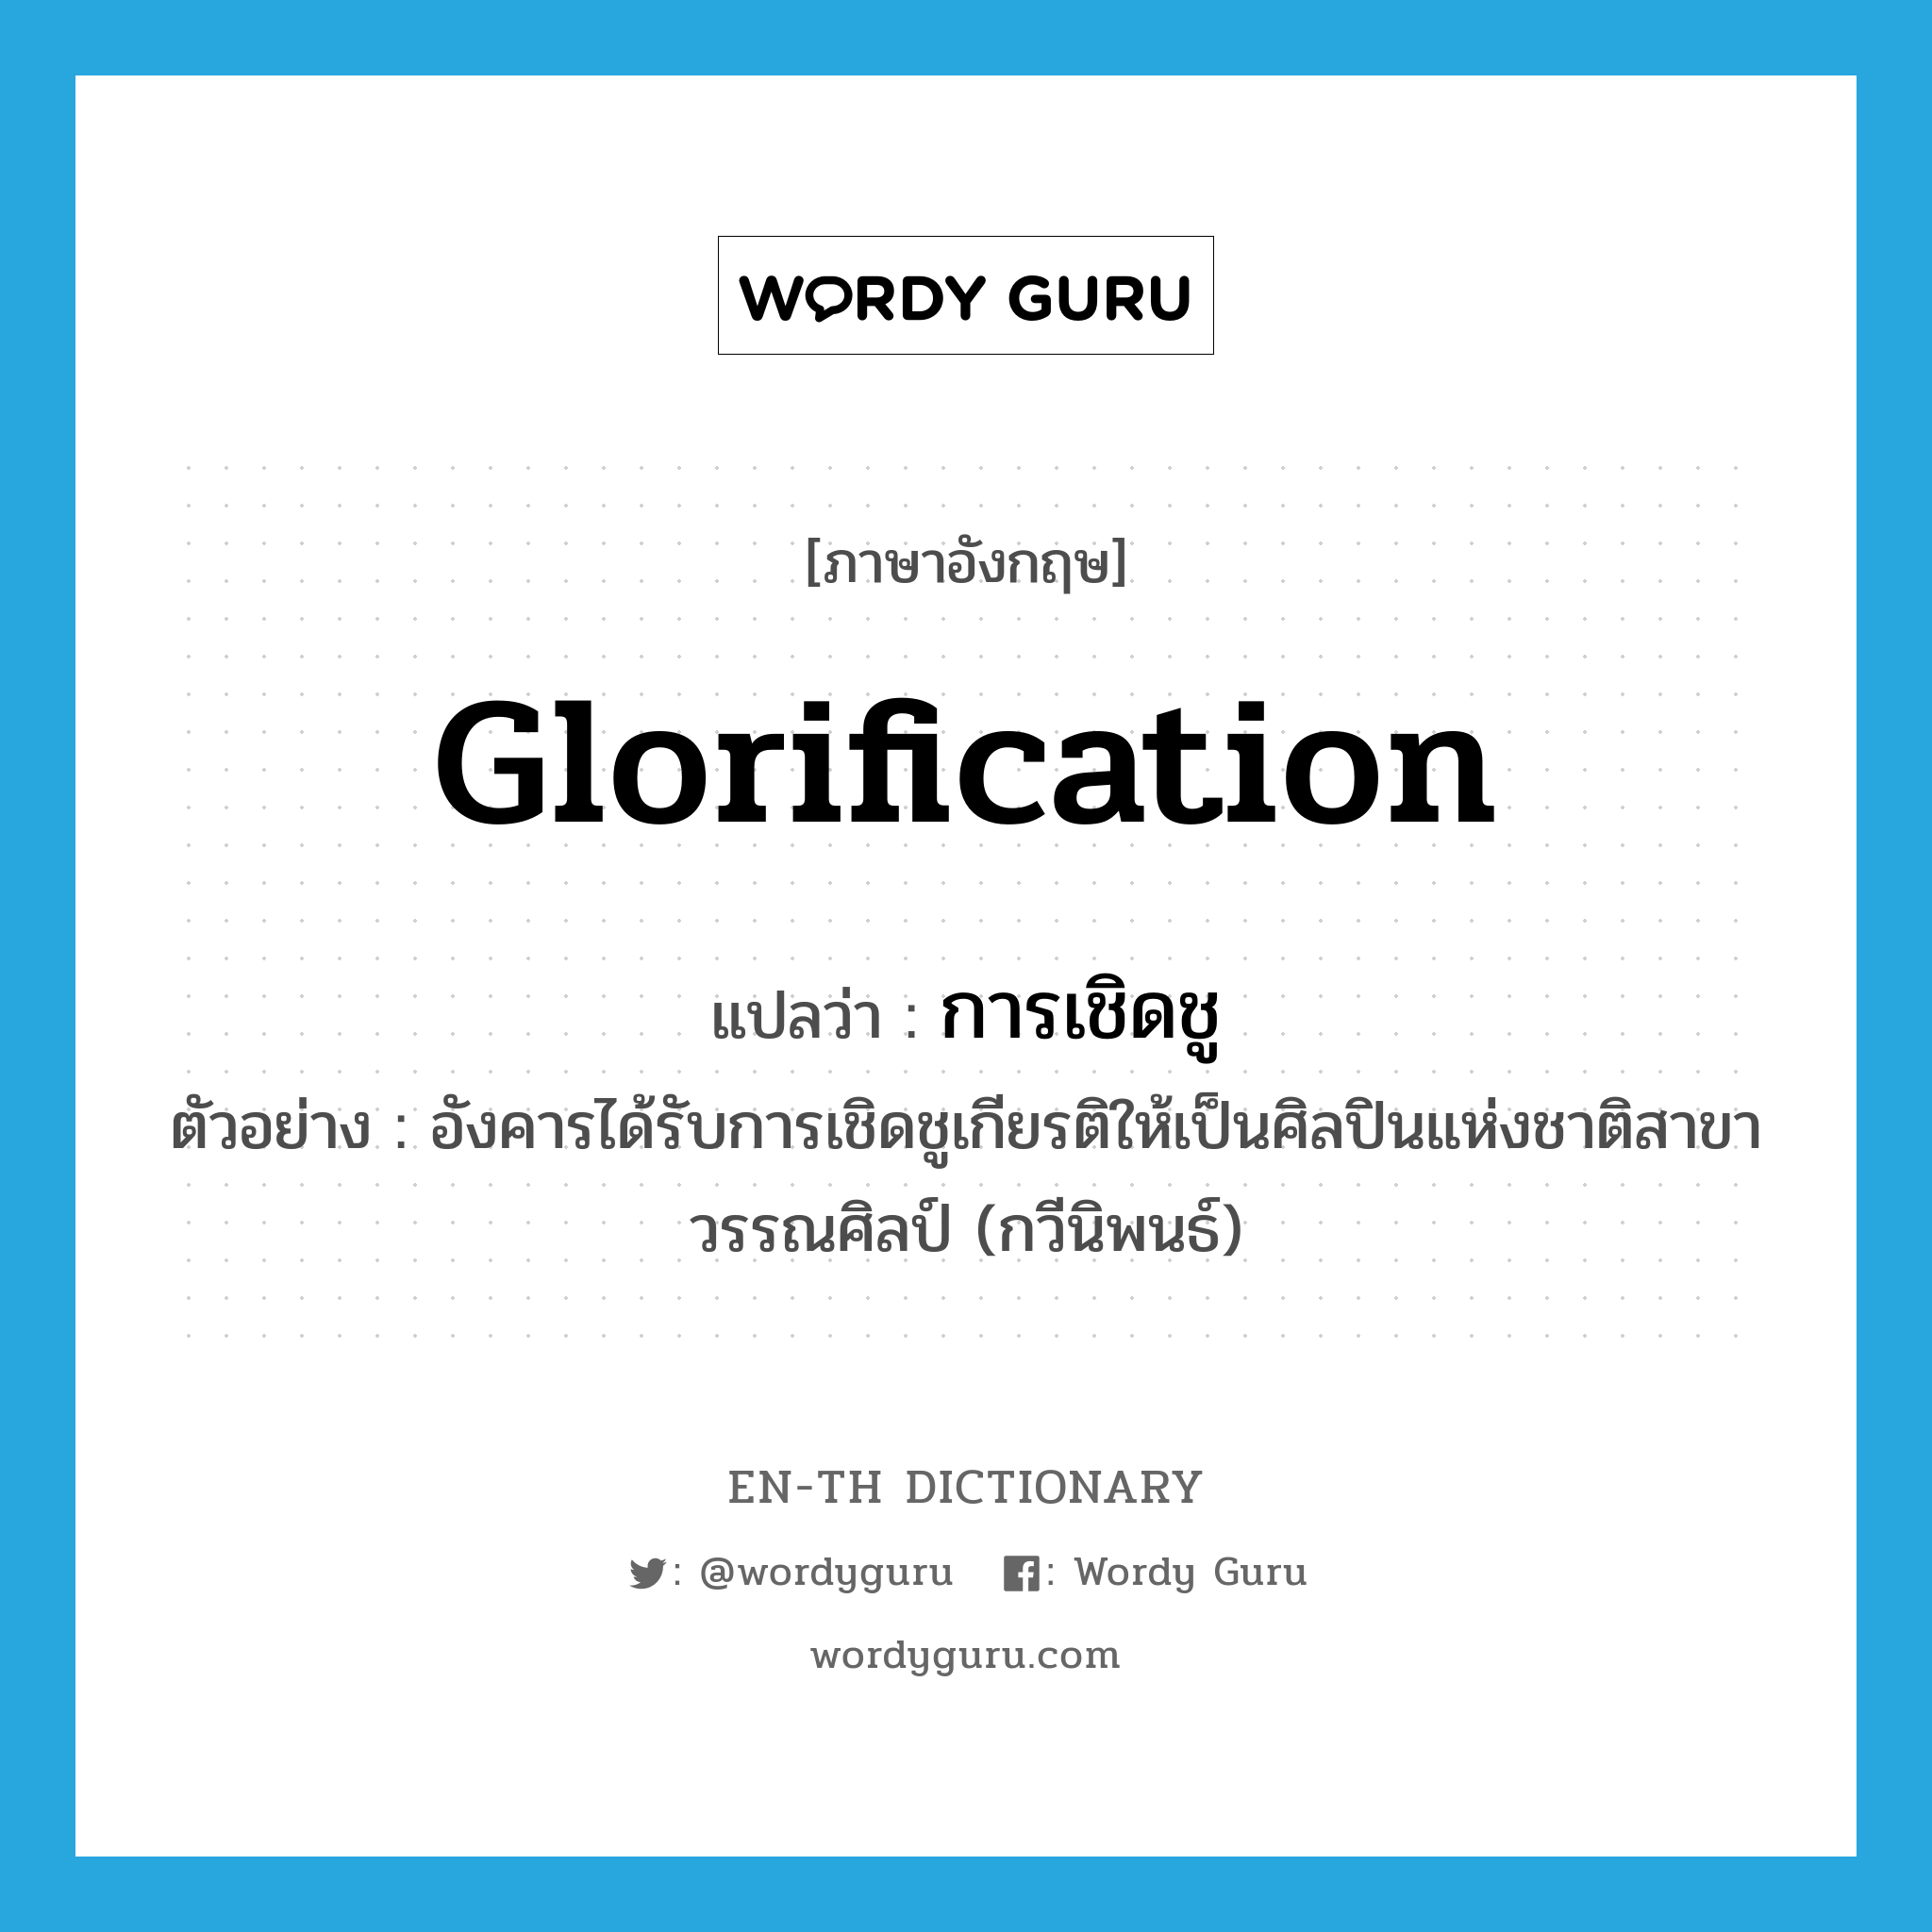 glorification แปลว่า?, คำศัพท์ภาษาอังกฤษ glorification แปลว่า การเชิดชู ประเภท N ตัวอย่าง อังคารได้รับการเชิดชูเกียรติให้เป็นศิลปินแห่งชาติสาขาวรรณศิลป์ (กวีนิพนธ์) หมวด N